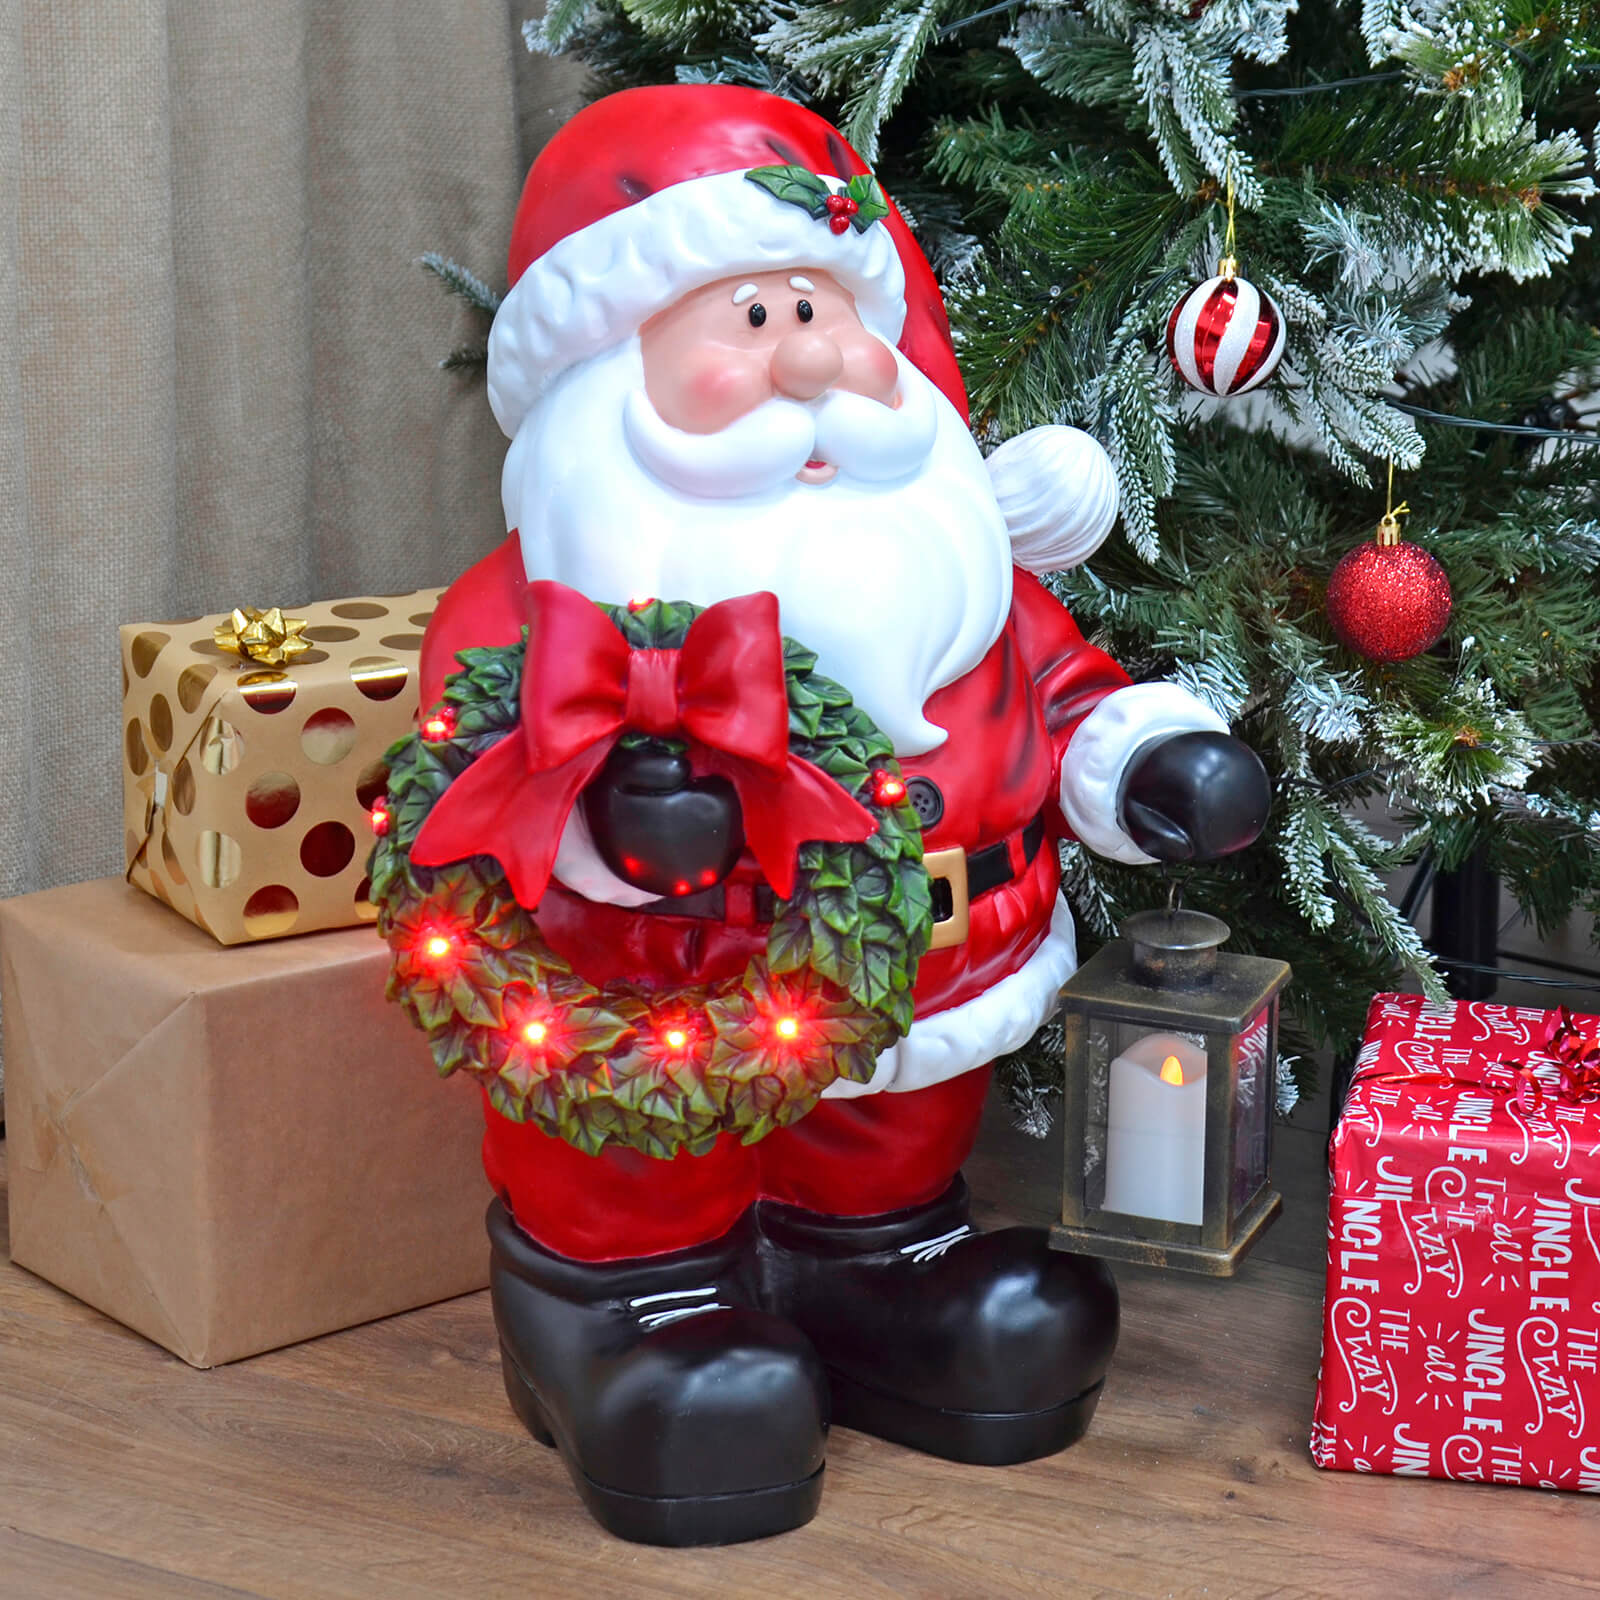 Mr Crimbo Large Light Up Santa Ornament Lantern Wreath 64cm - MrCrimbo.co.uk -XS7251 - -SALE